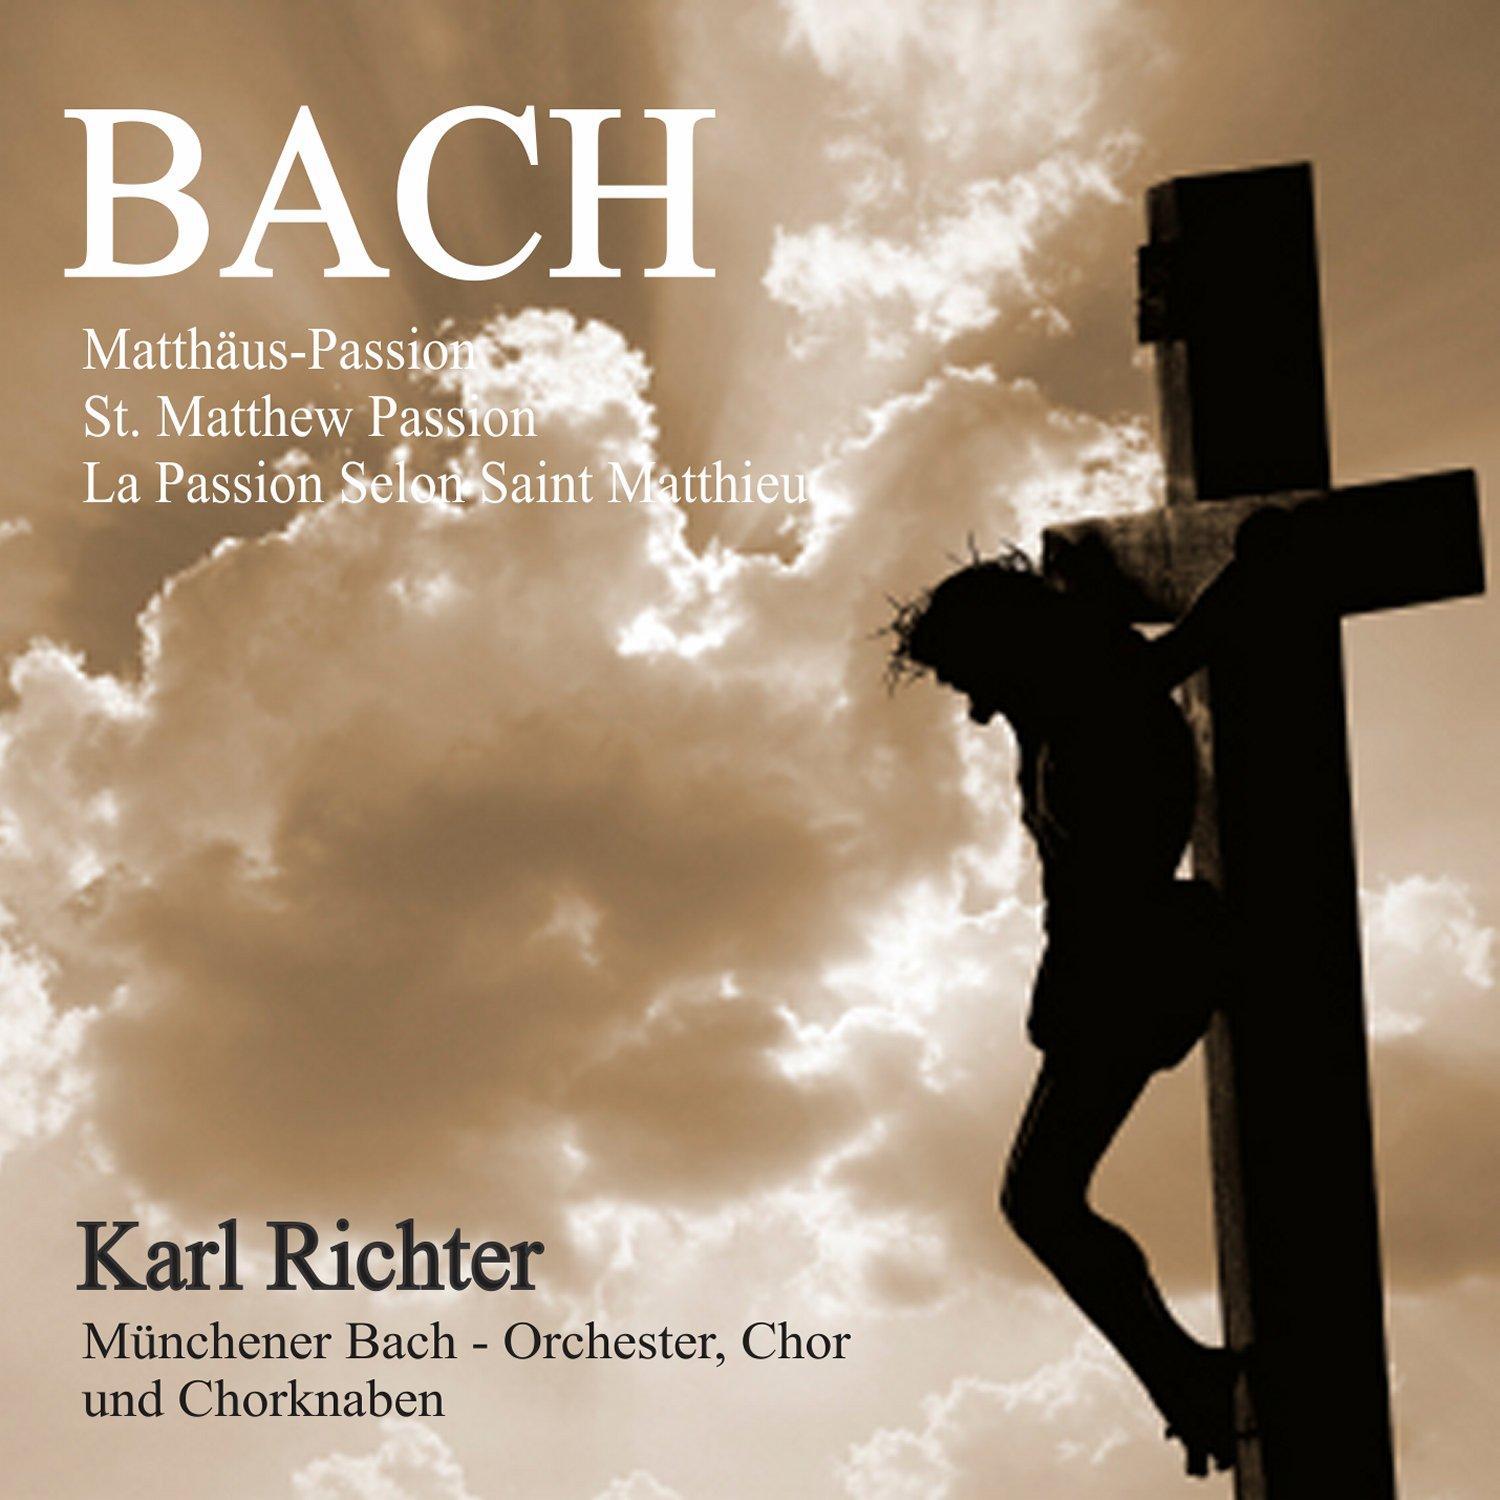 Matthäus-Passion, BWV 244, Pt. 2: No. 72. Choral "Wenn Ich Einmal Soll Scheiden"